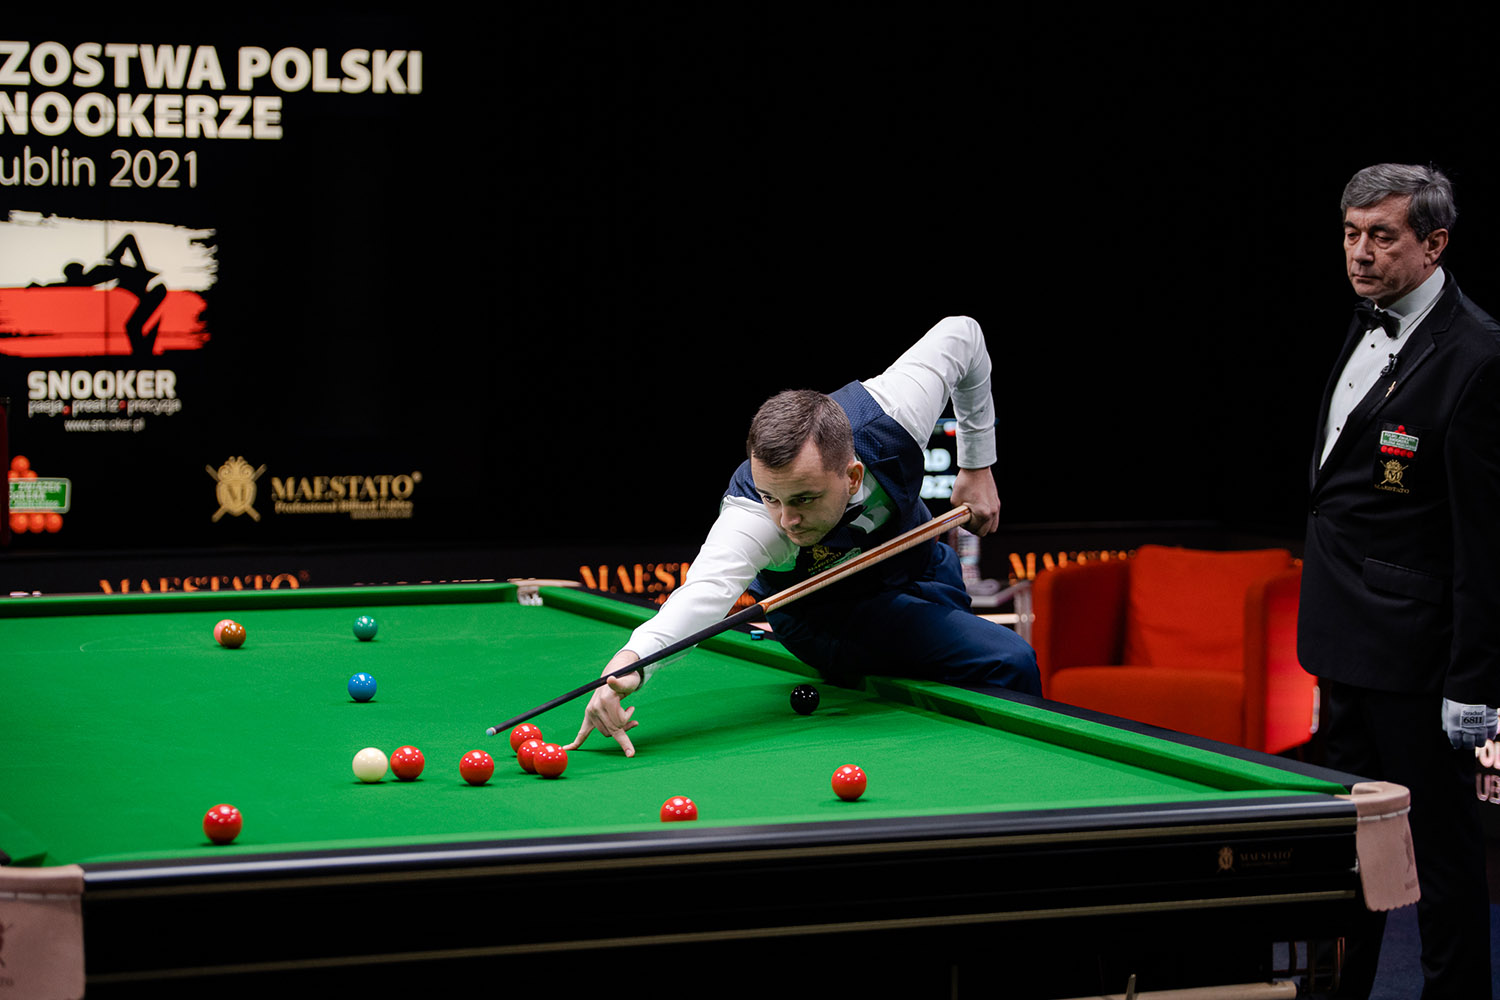 Juszczyszyn Claims Polish Snooker Title